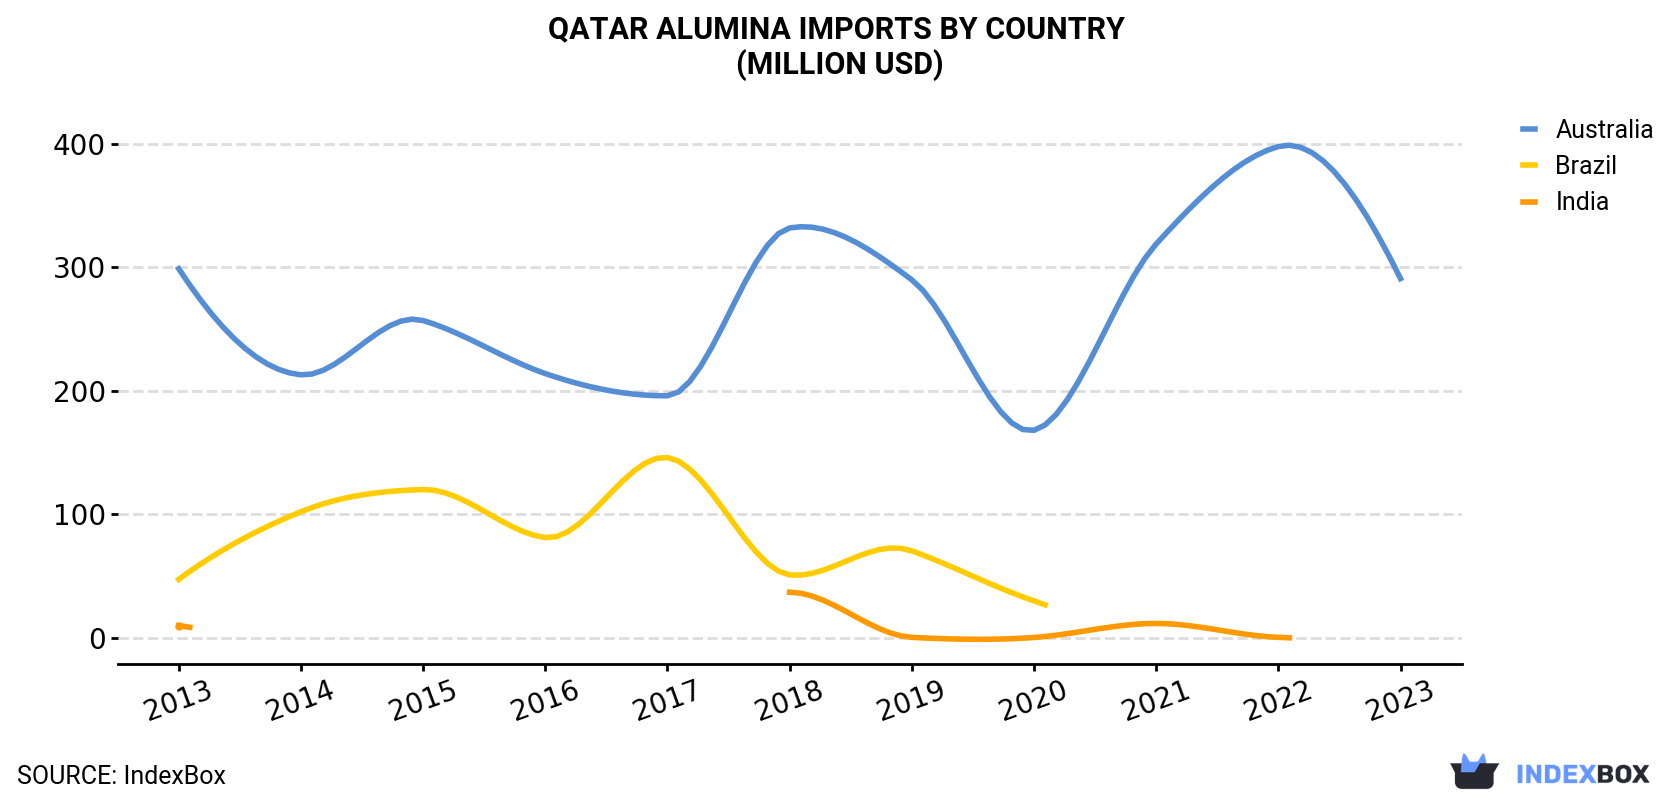 Qatar Alumina Imports By Country (Million USD)